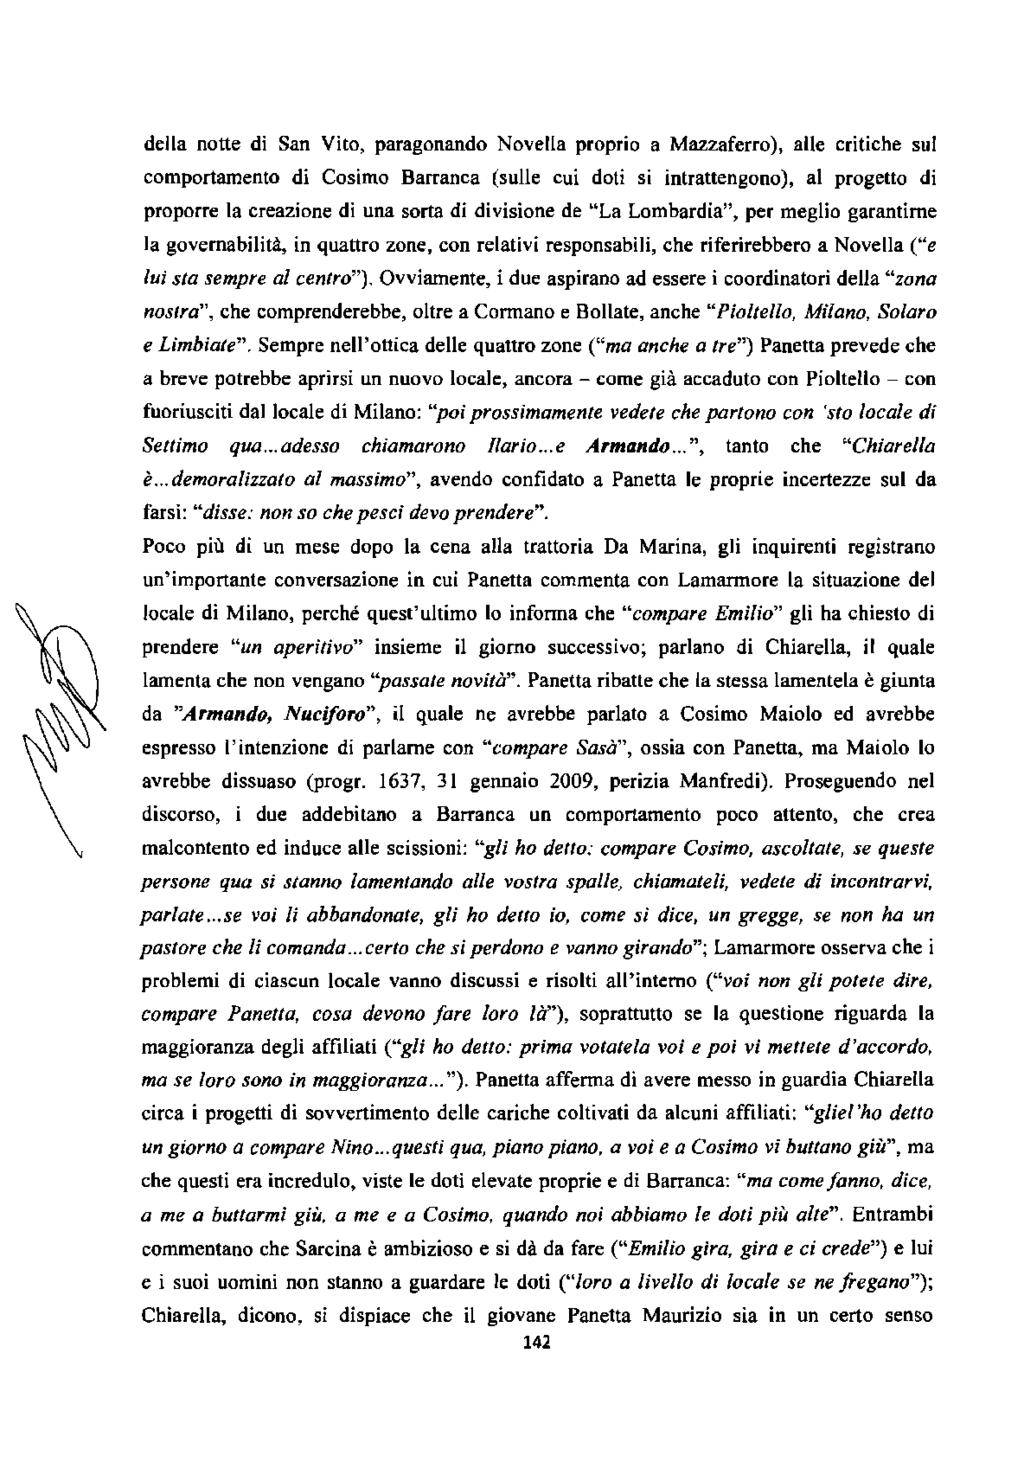 della notte di San Vito, paragonando Novella proprio a Mazzaferro), alle critiche sul comportamento di Cosimo Barranca (sulle cui doti si intrattengono), al progetto di proporre la creazione di una